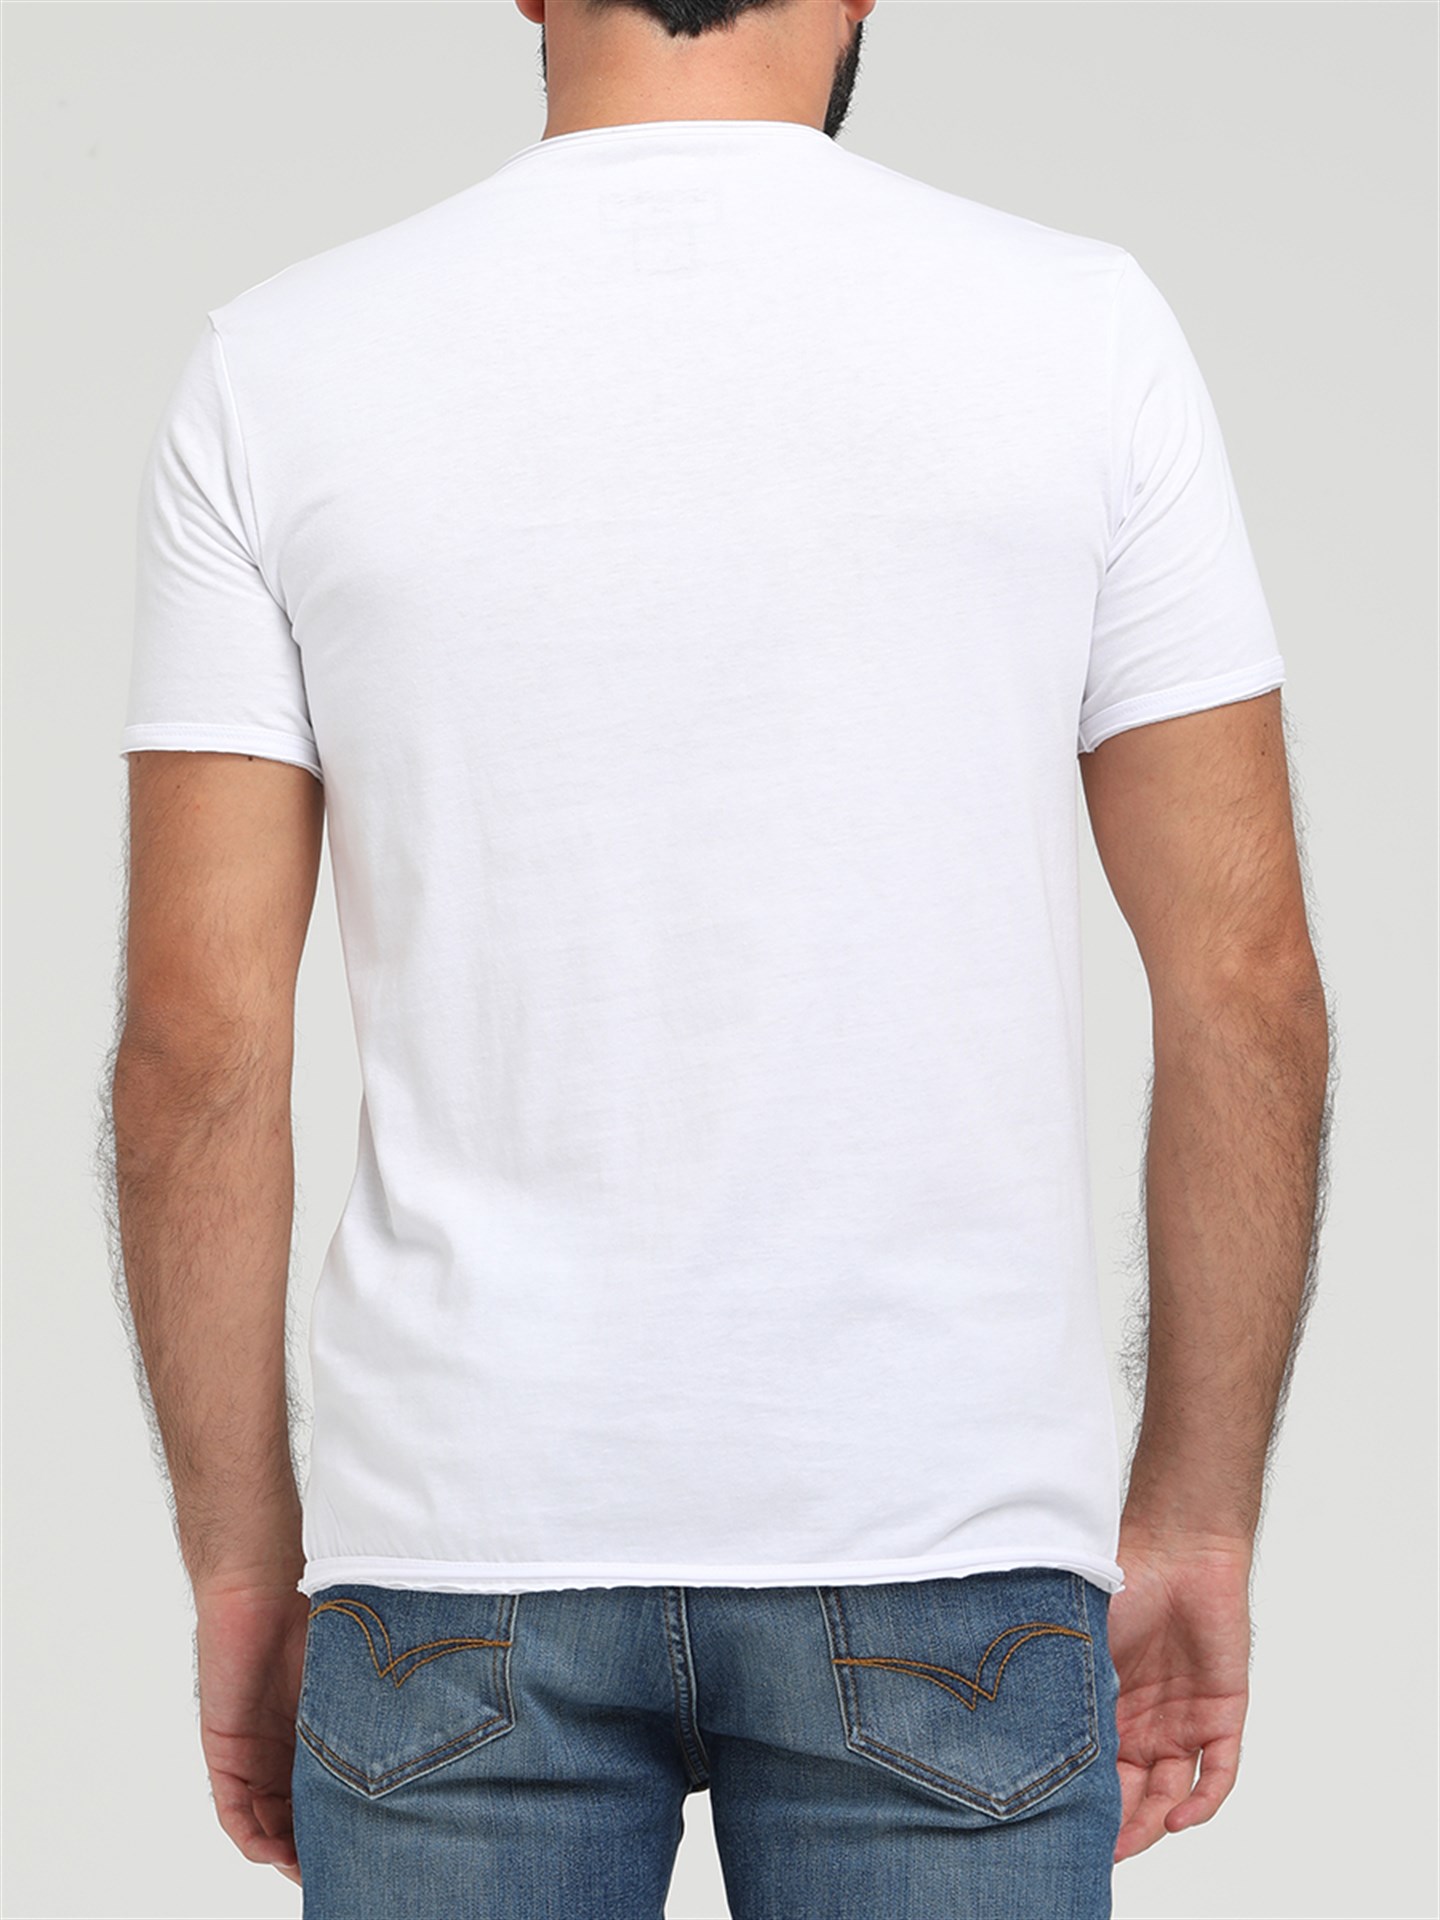 Lee Cooper Target Erkek V Yaka Patlı T-Shirt Siyah. 2